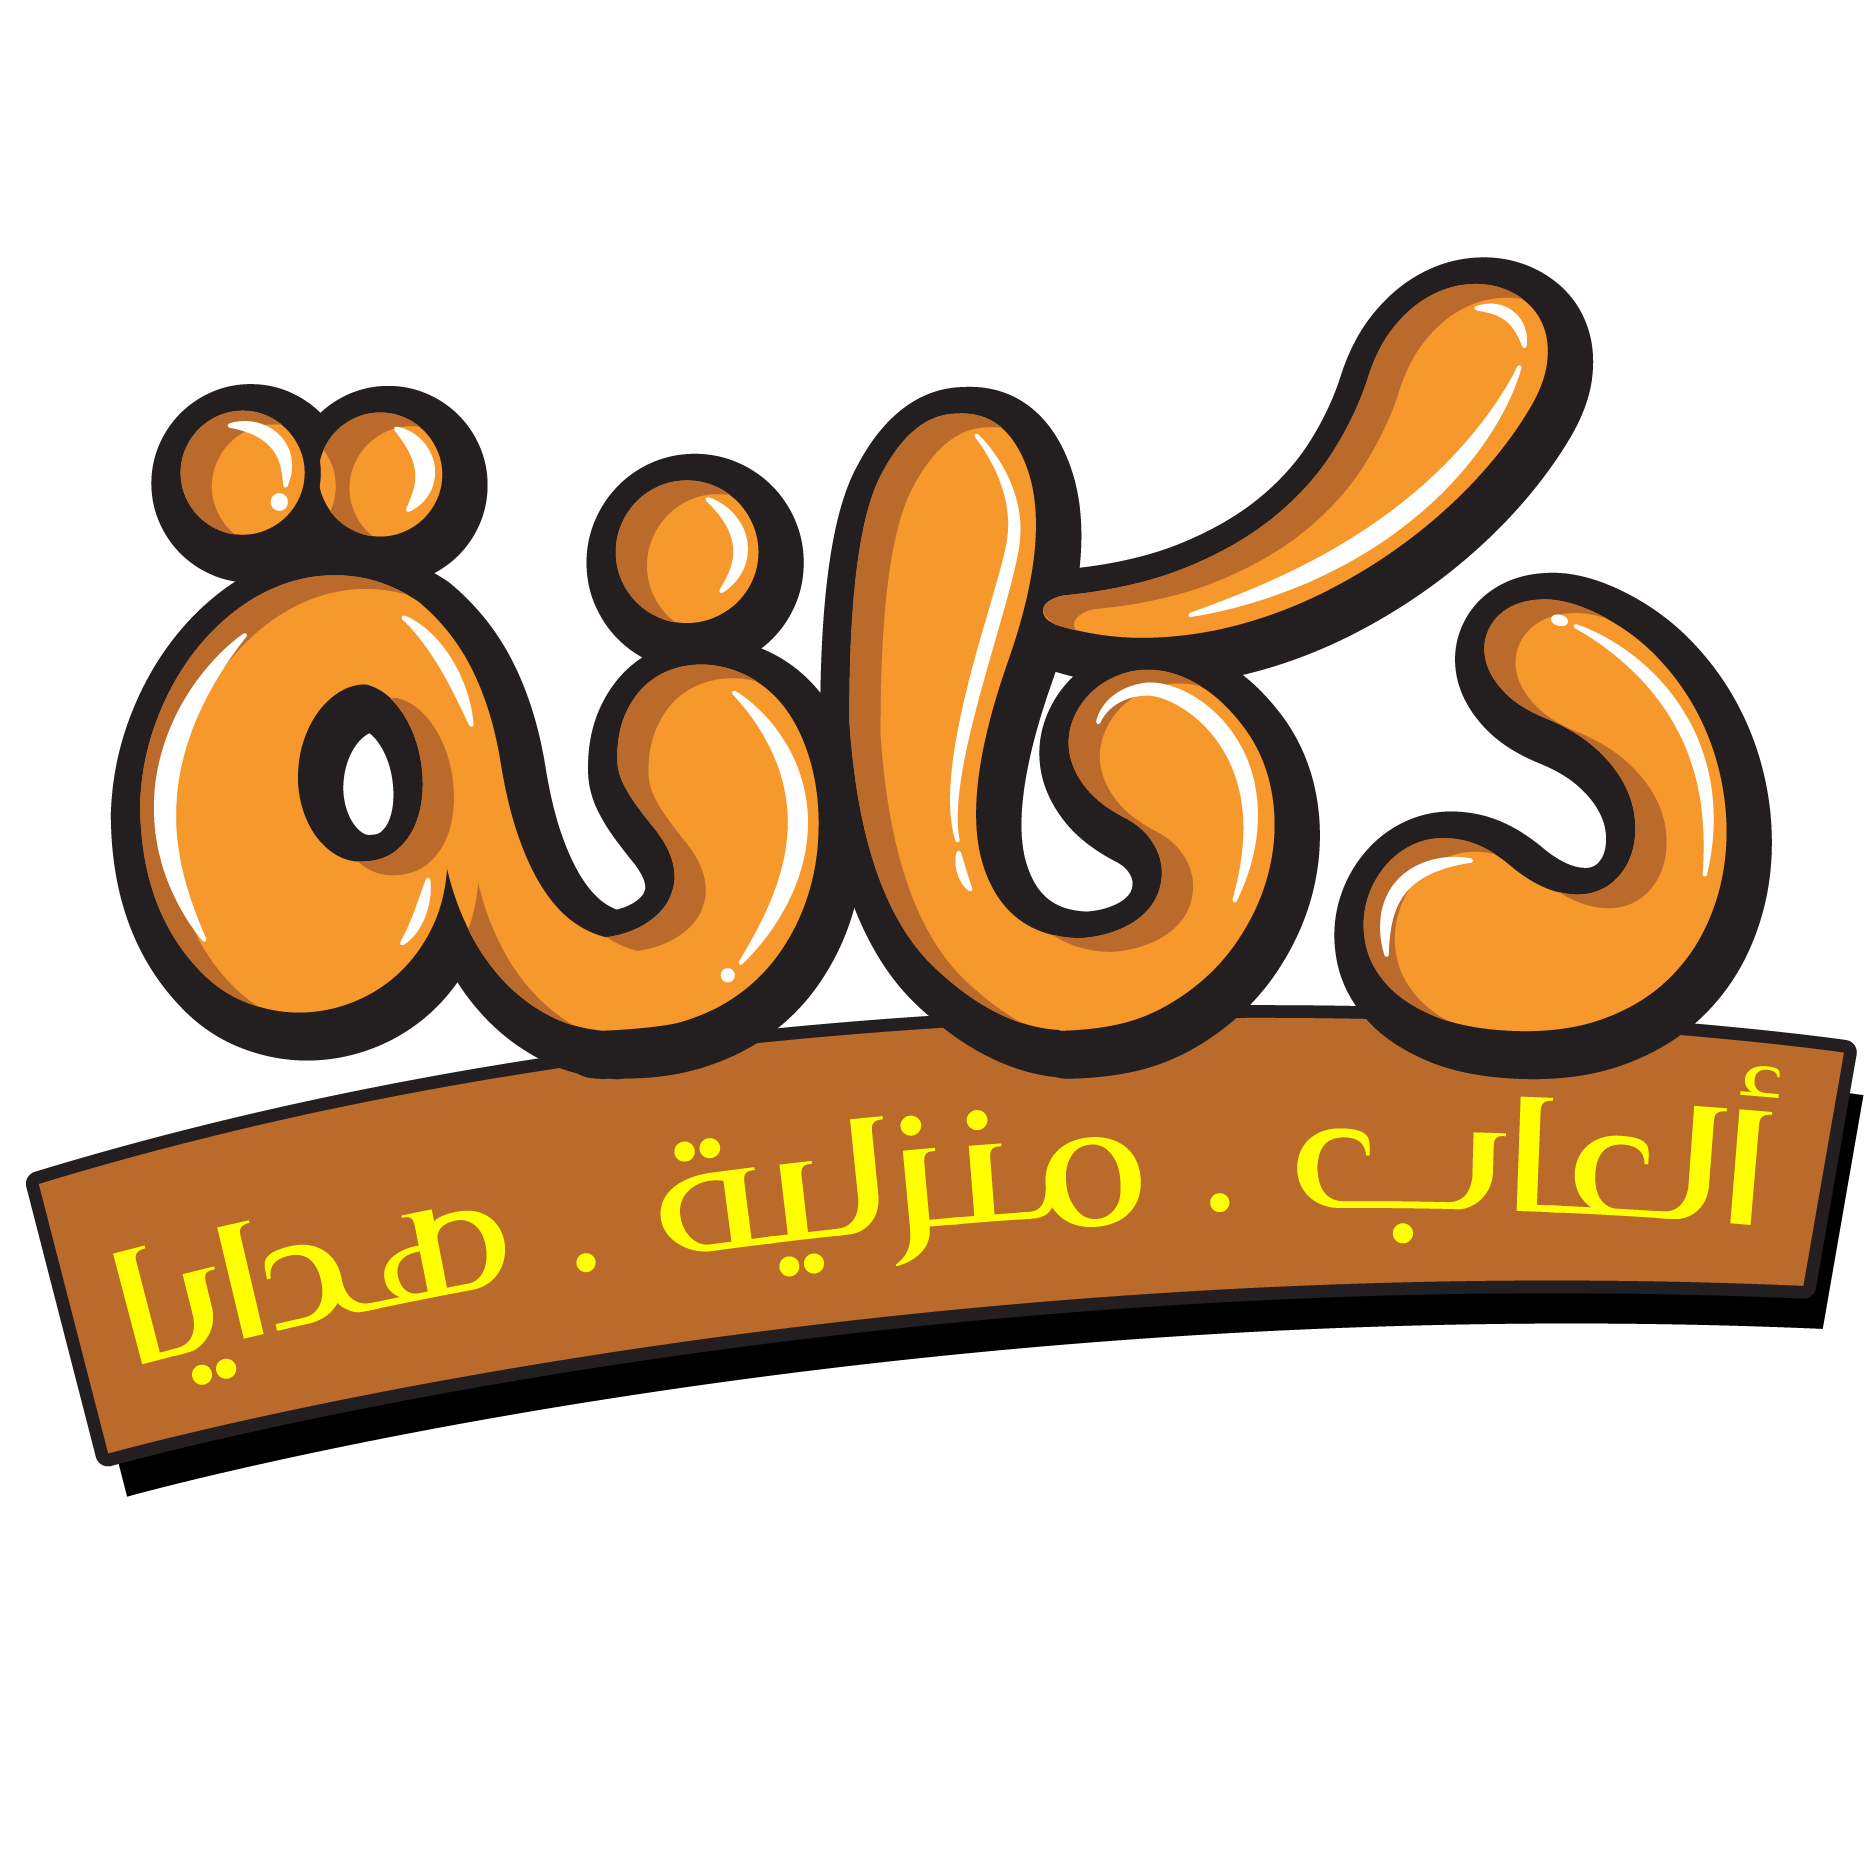 دكانة : أكبر سوق اونلاين في الأردن لألعاب الأطفال والمنزلبة وأكثر... 